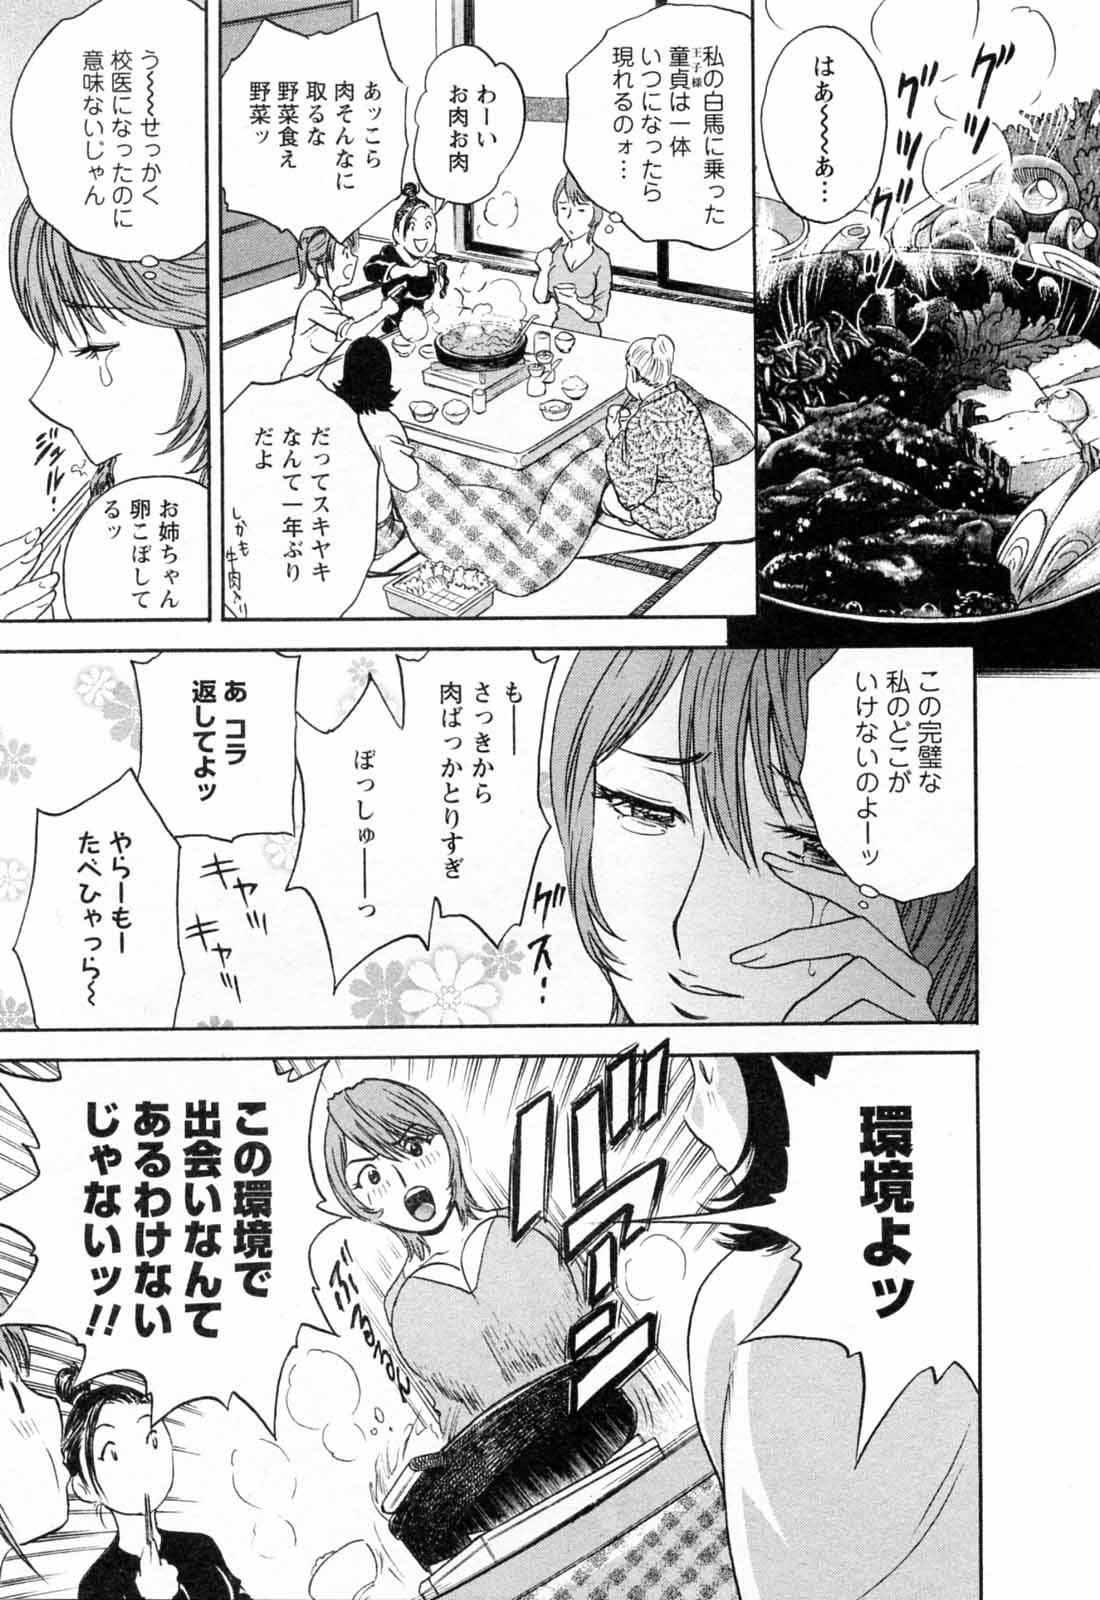 [Hidemaru] Mo-Retsu! Boin Sensei (Boing Boing Teacher) Vol.5 34